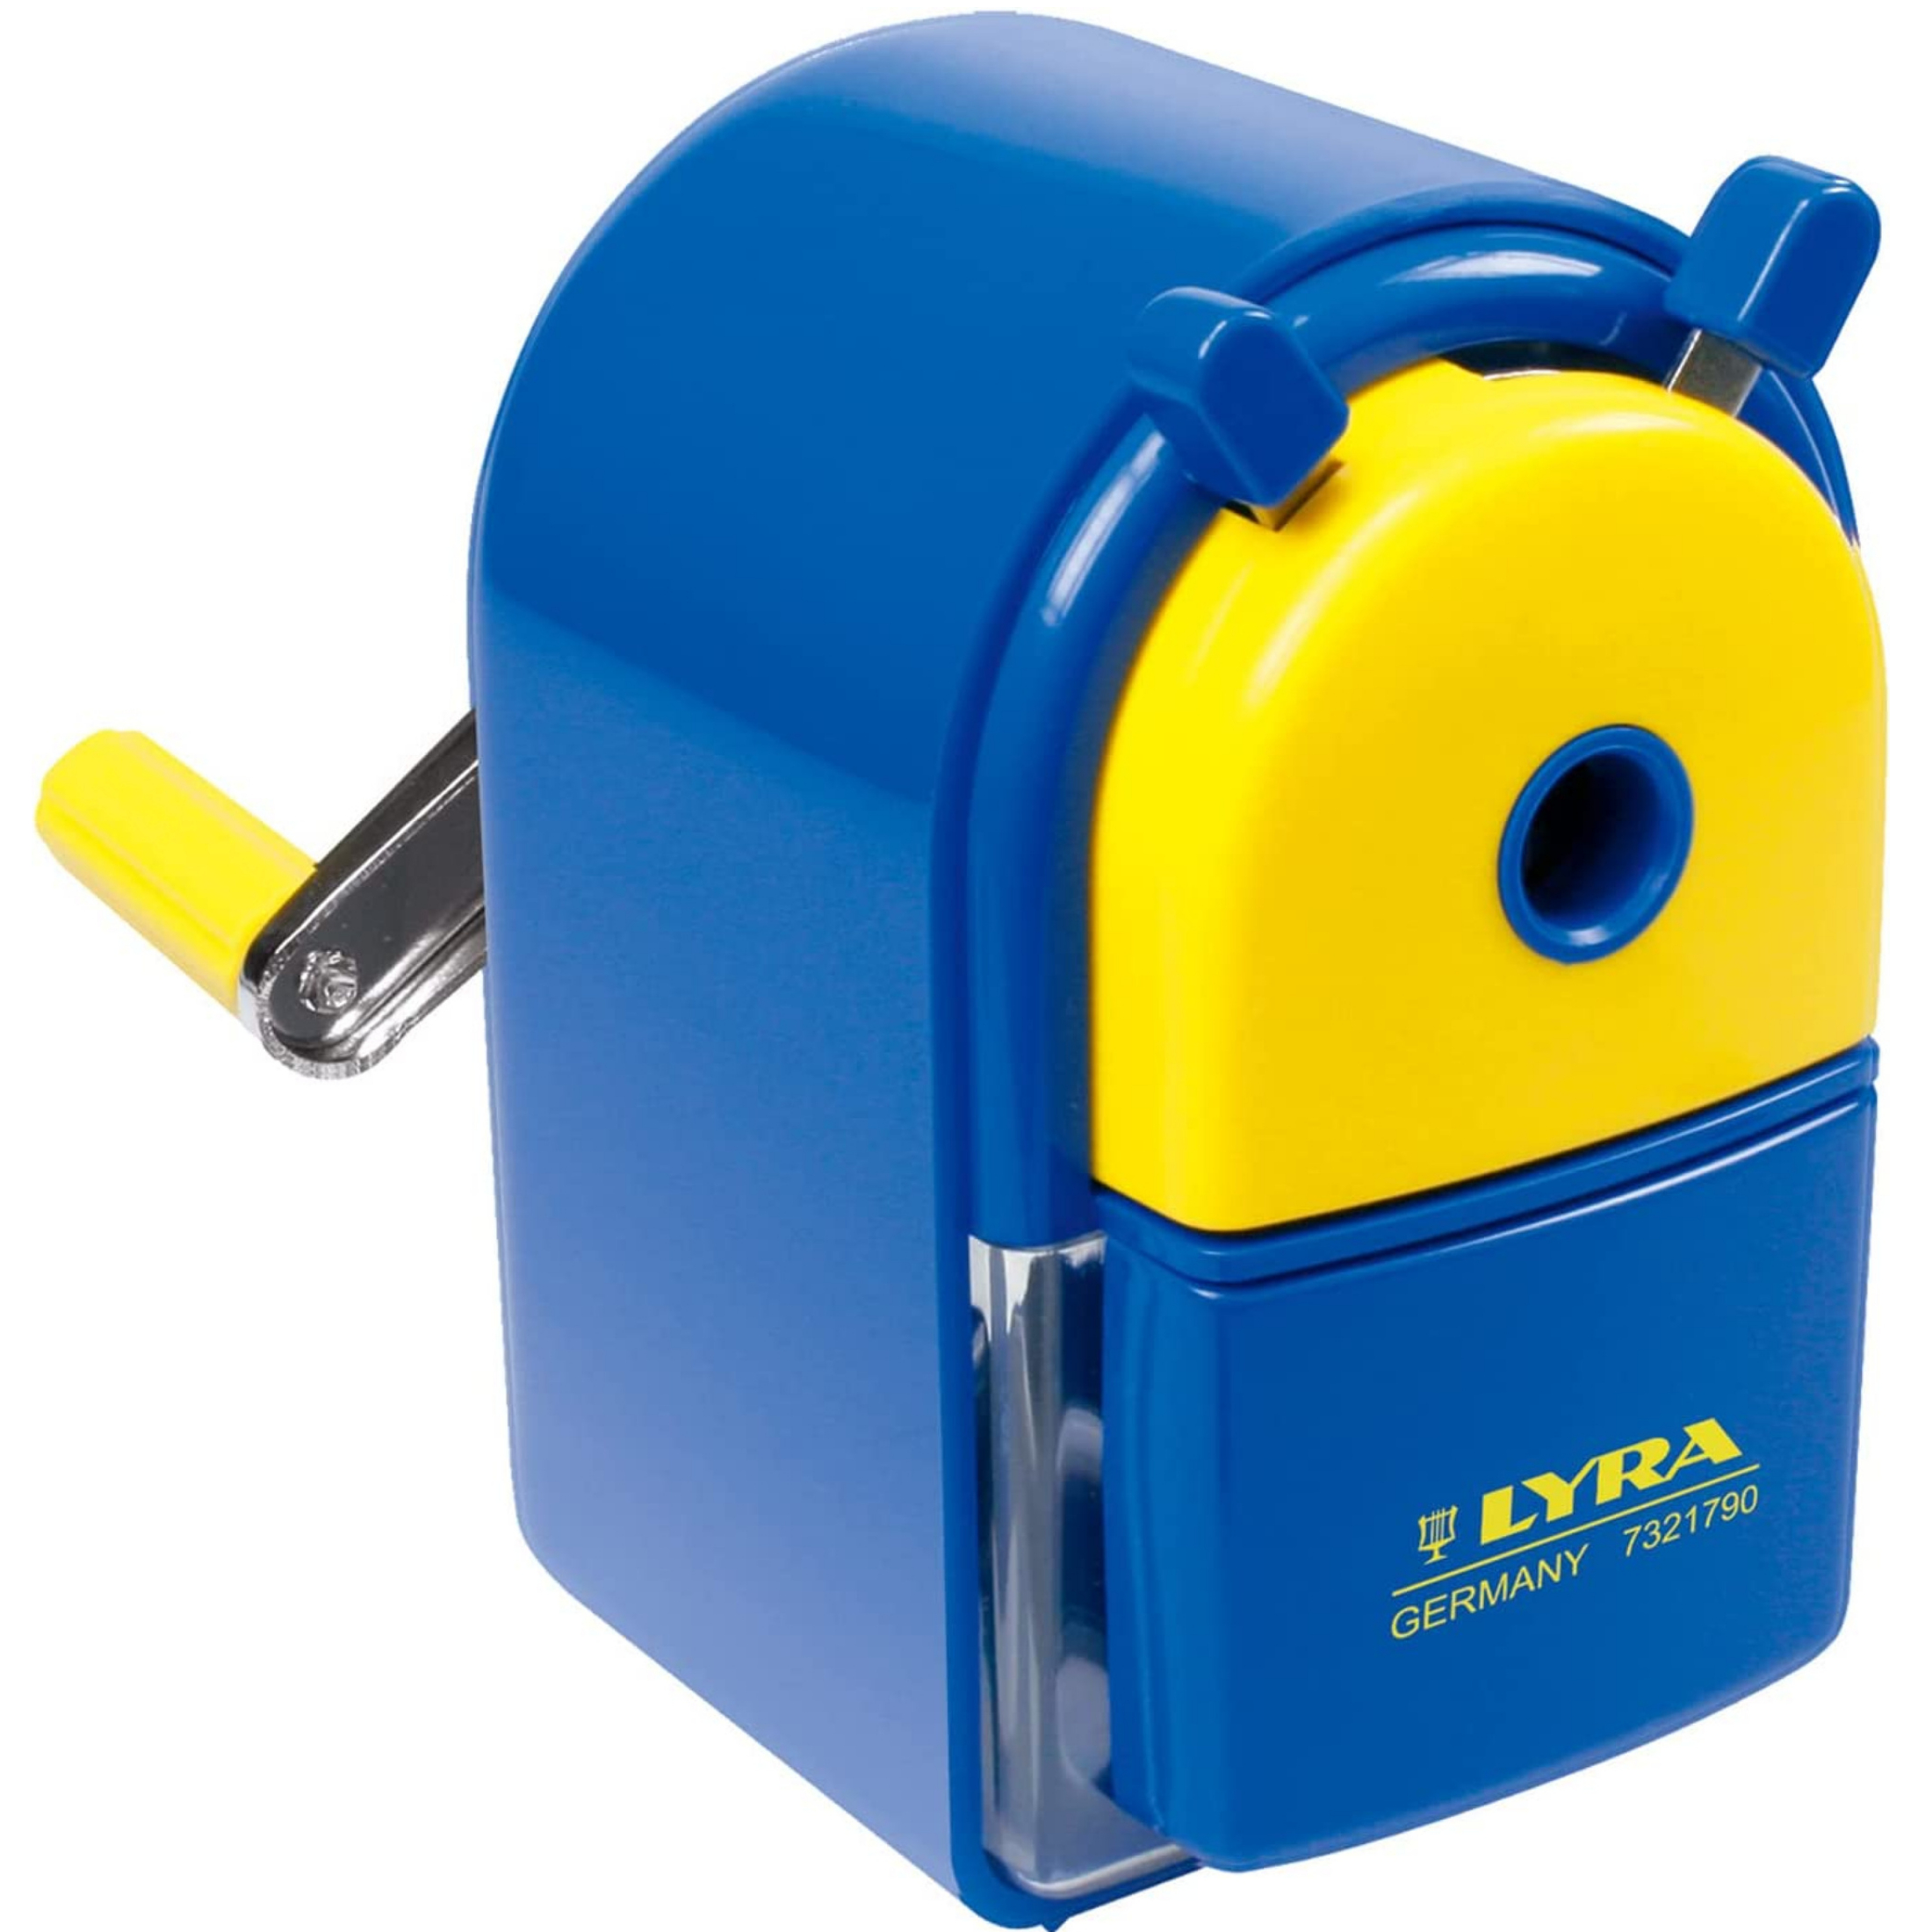 Maquina de afiar em plástico de cor azul referencia 8879 Lyra.